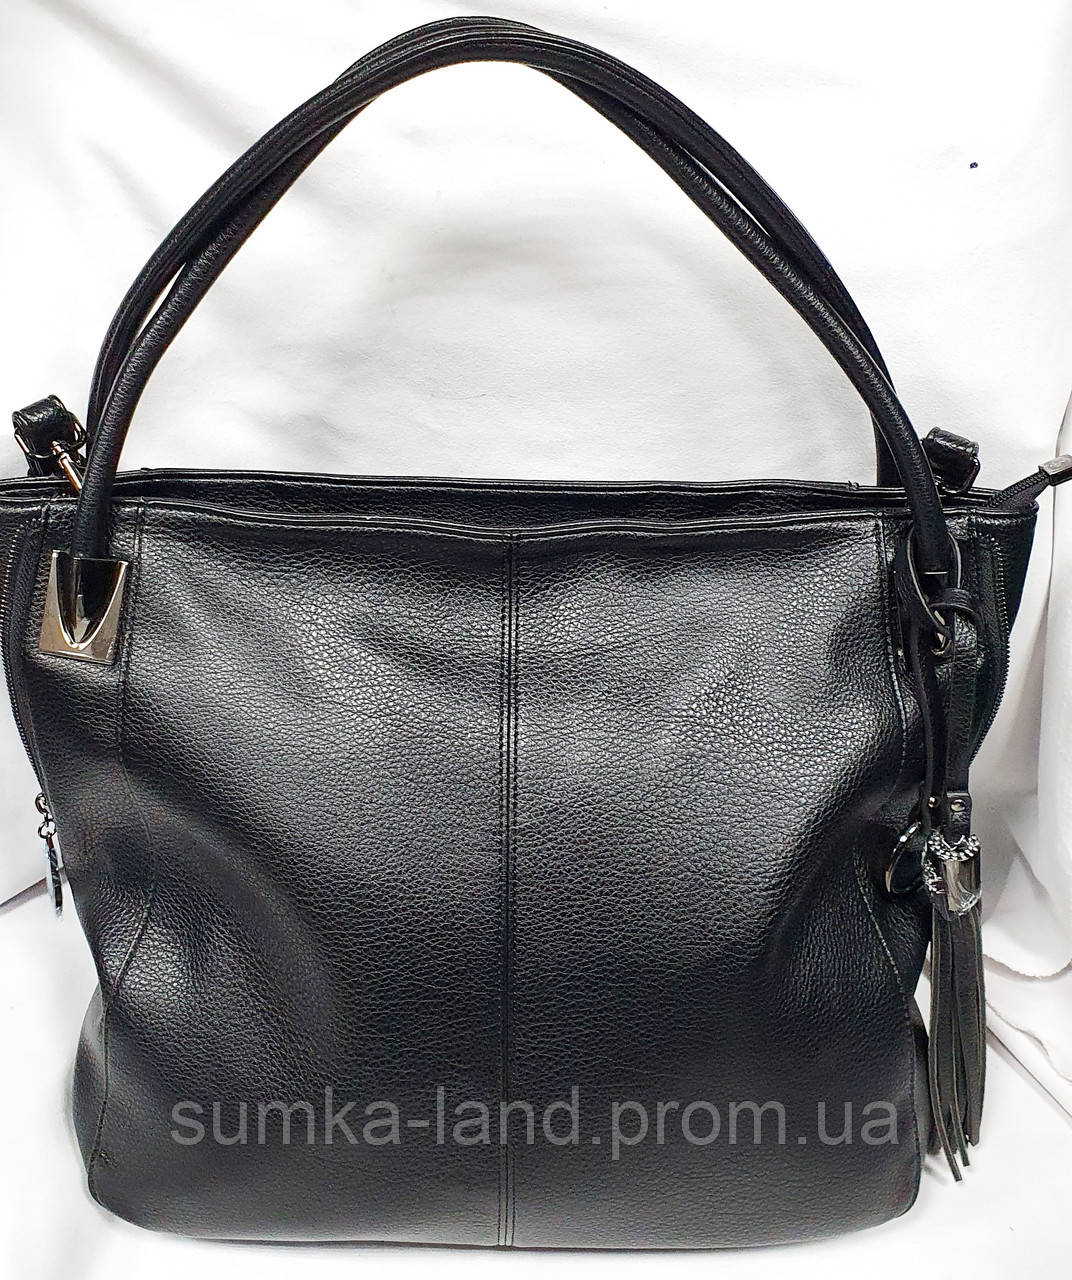 Брендовий чорна жіноча сумка Sankaslo з двома ручками і ремінцем на плече 35*32 см